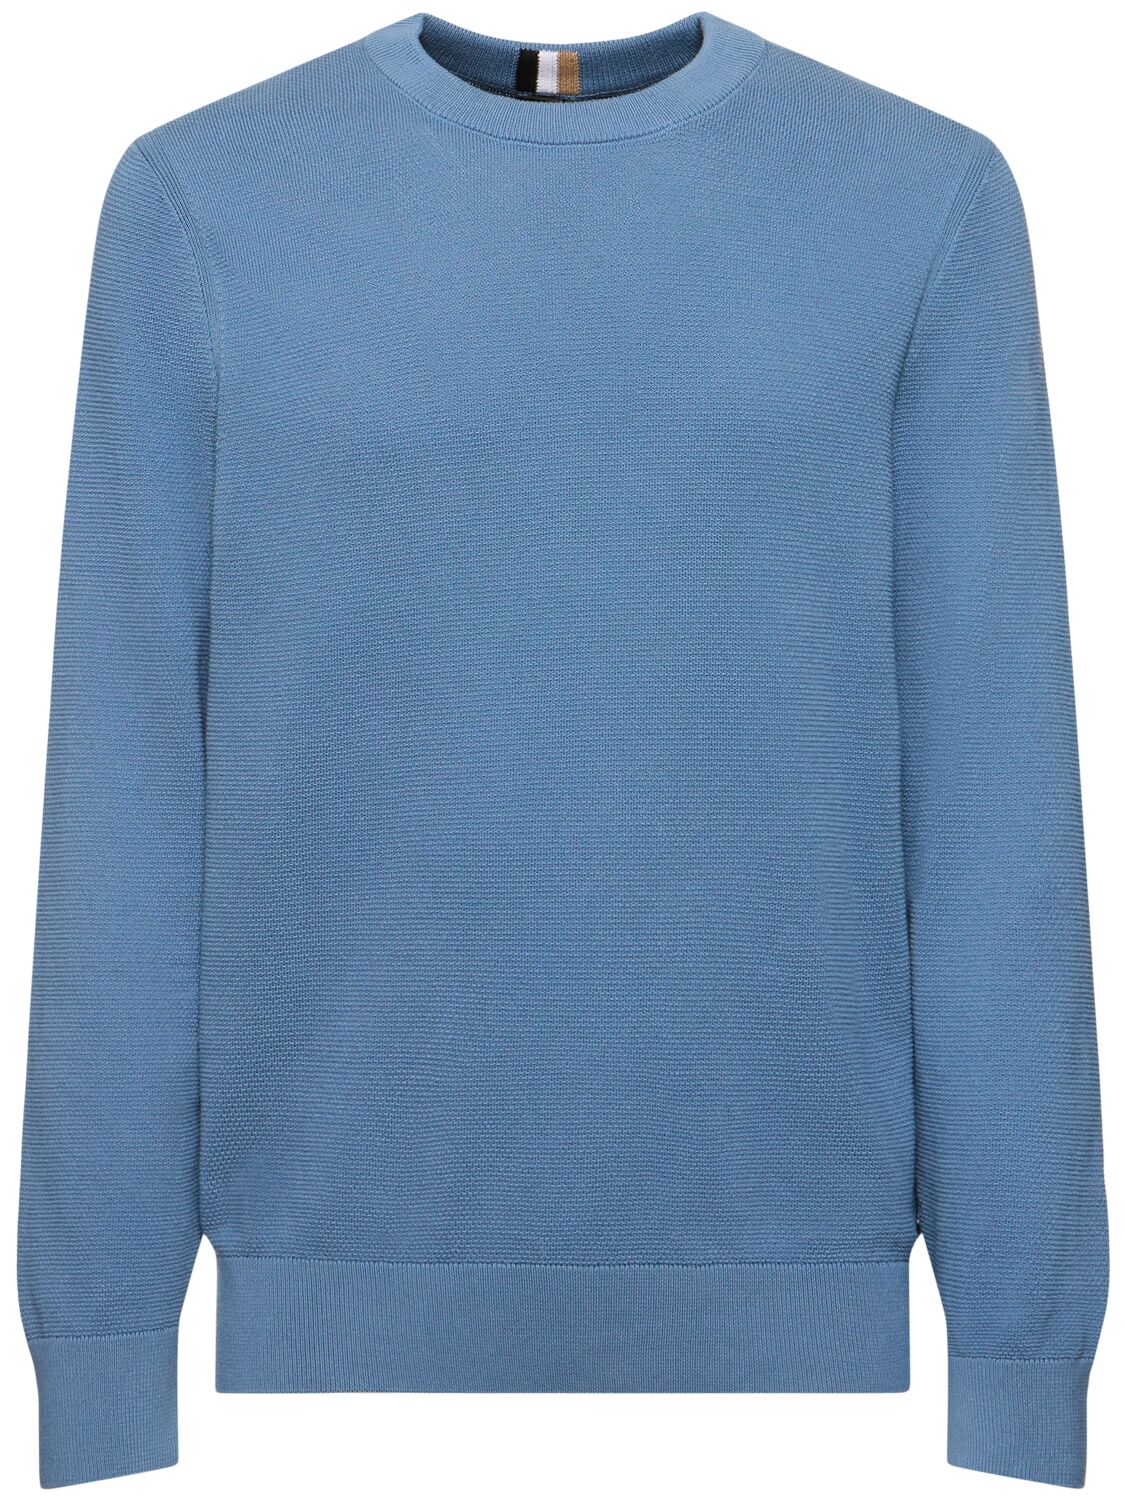 Hugo Boss Ecaio Knit Sweater In Blue